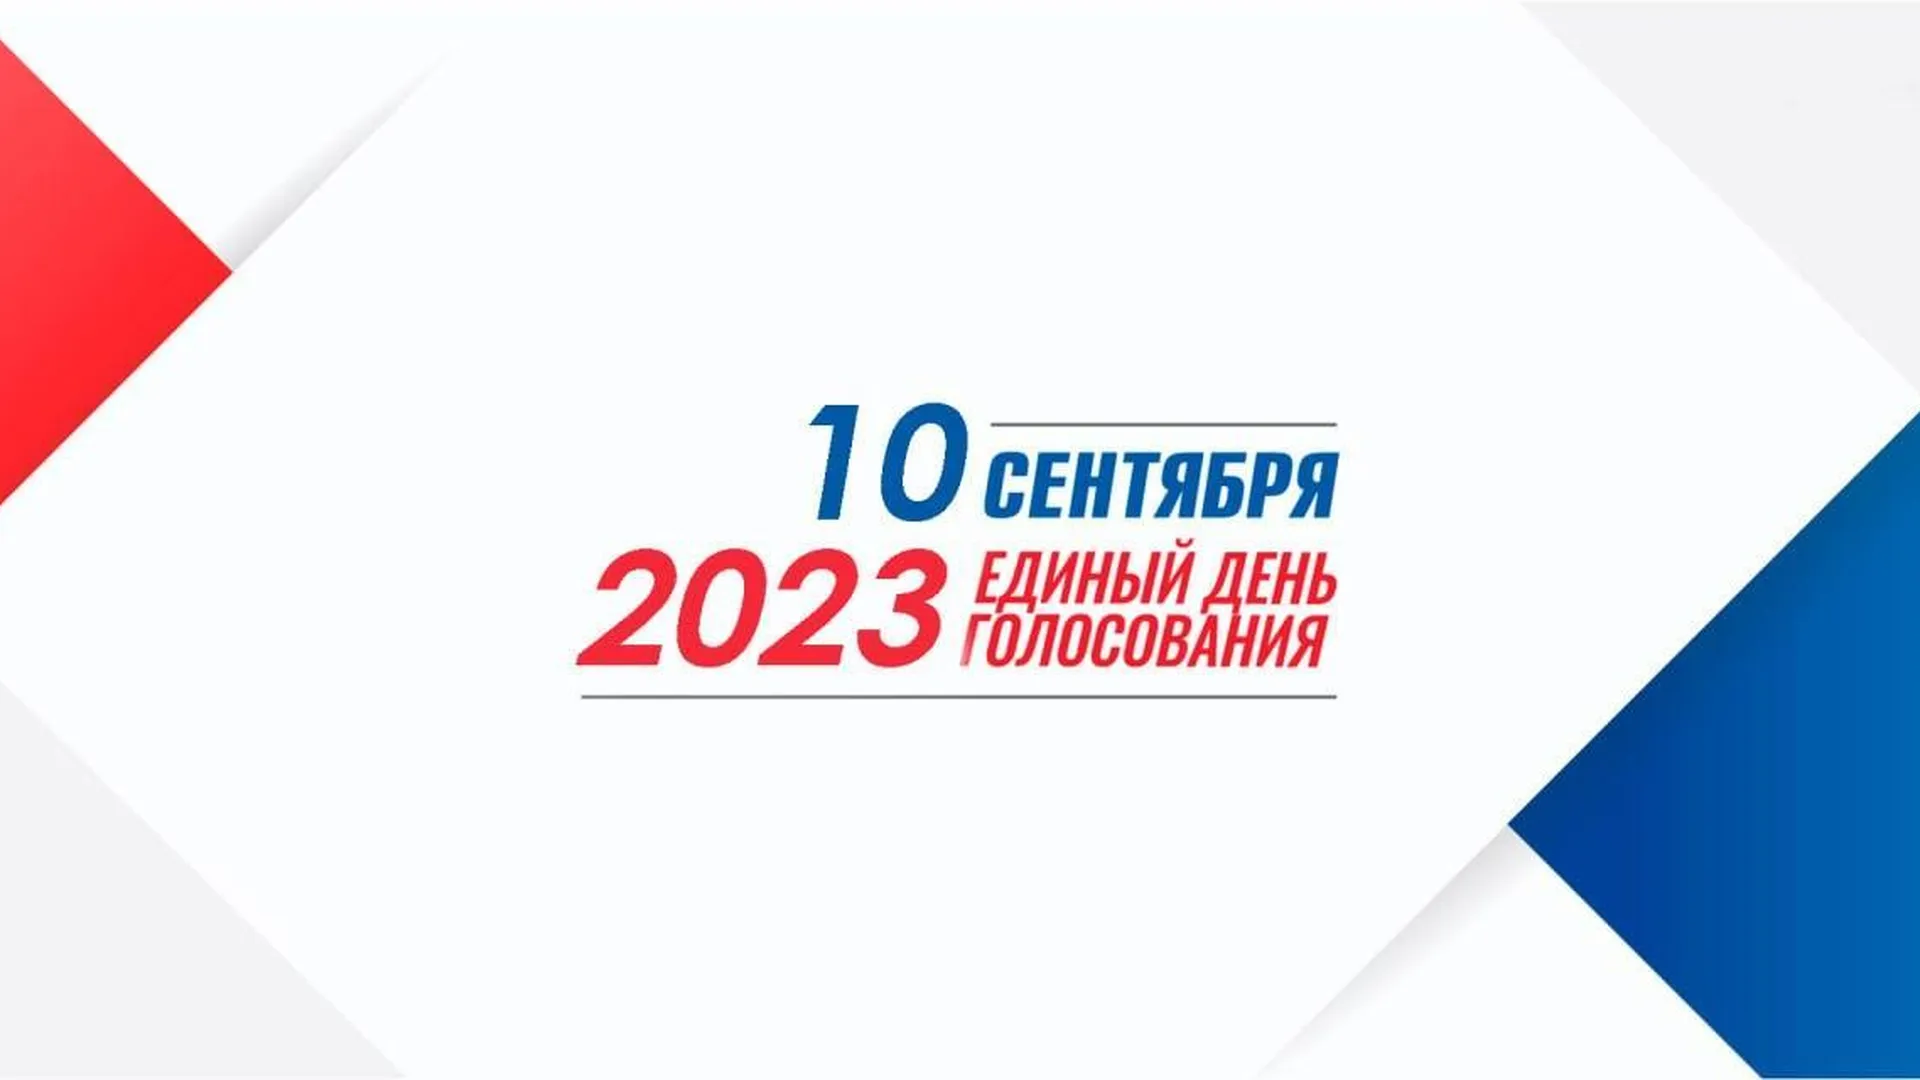 В Подмосковье 10 сентября 2023 года пройдут выборы в Совет депутатов ряда округов